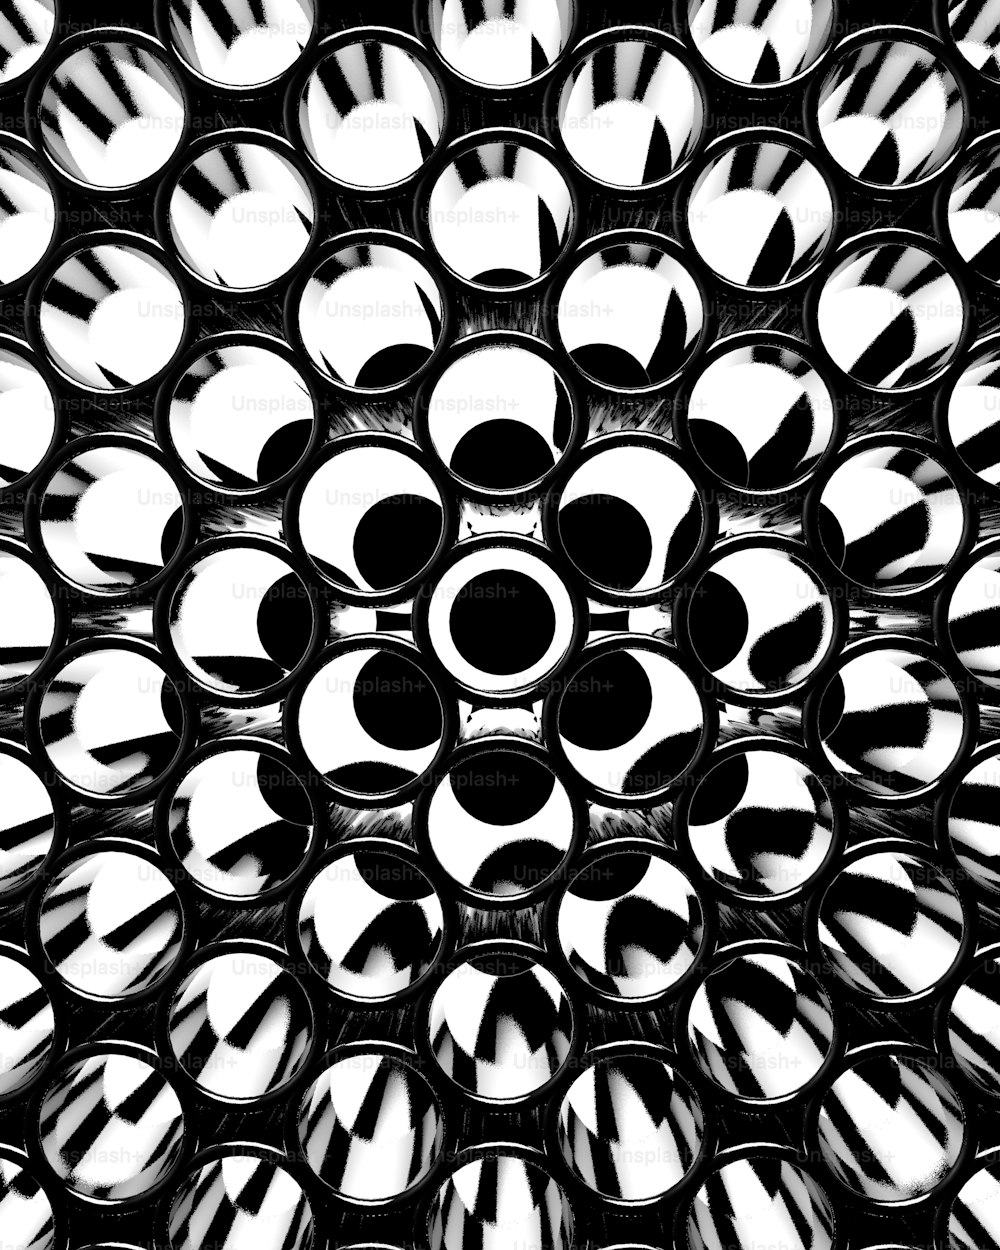 Ein Schwarz-Weiß-Foto von einem Haufen Kreise